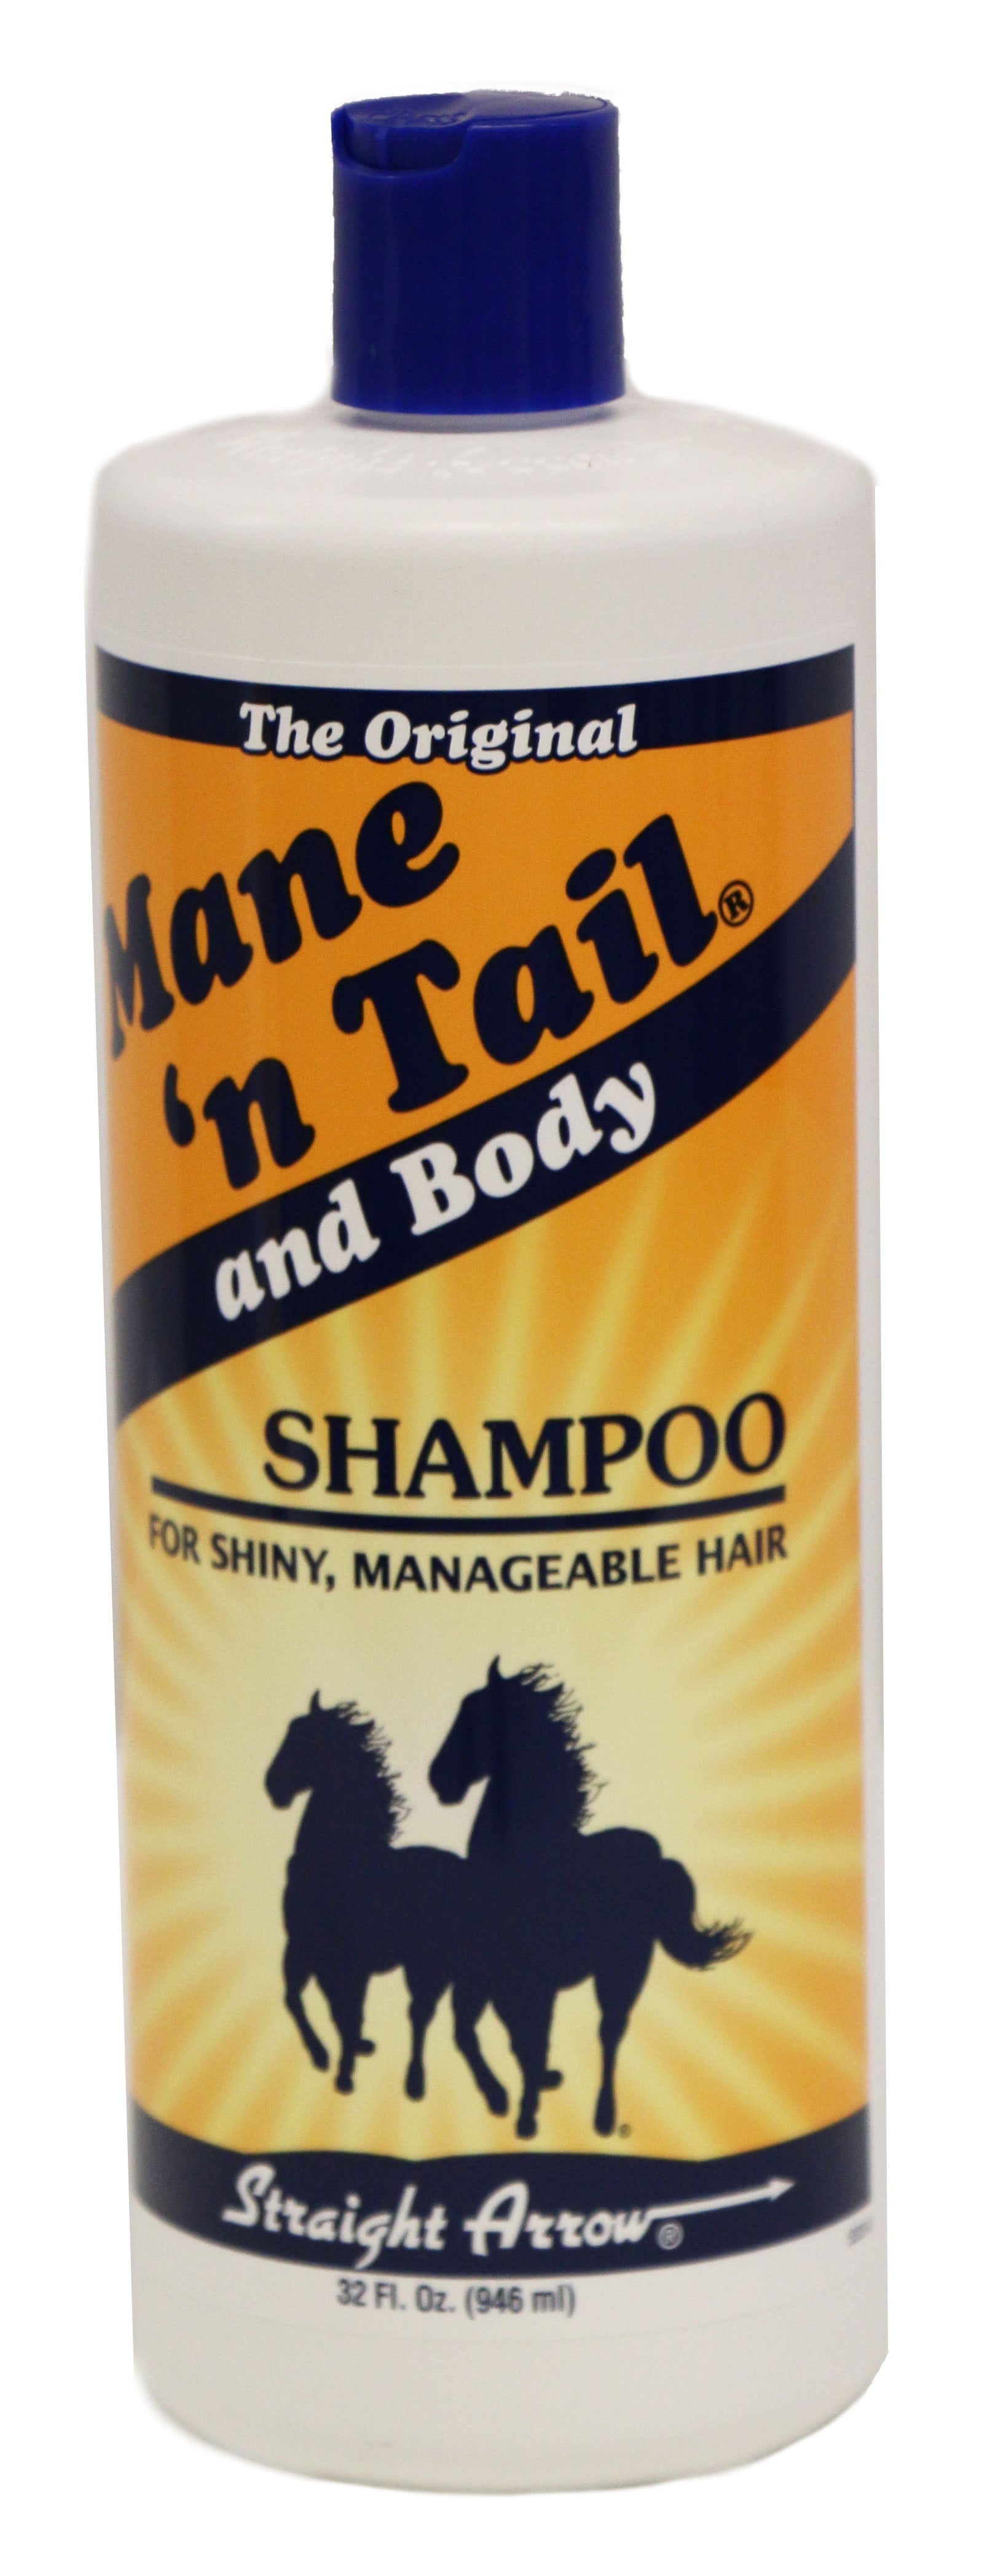 Mane 'n Tail Shampoo Greg Grant Saddlery